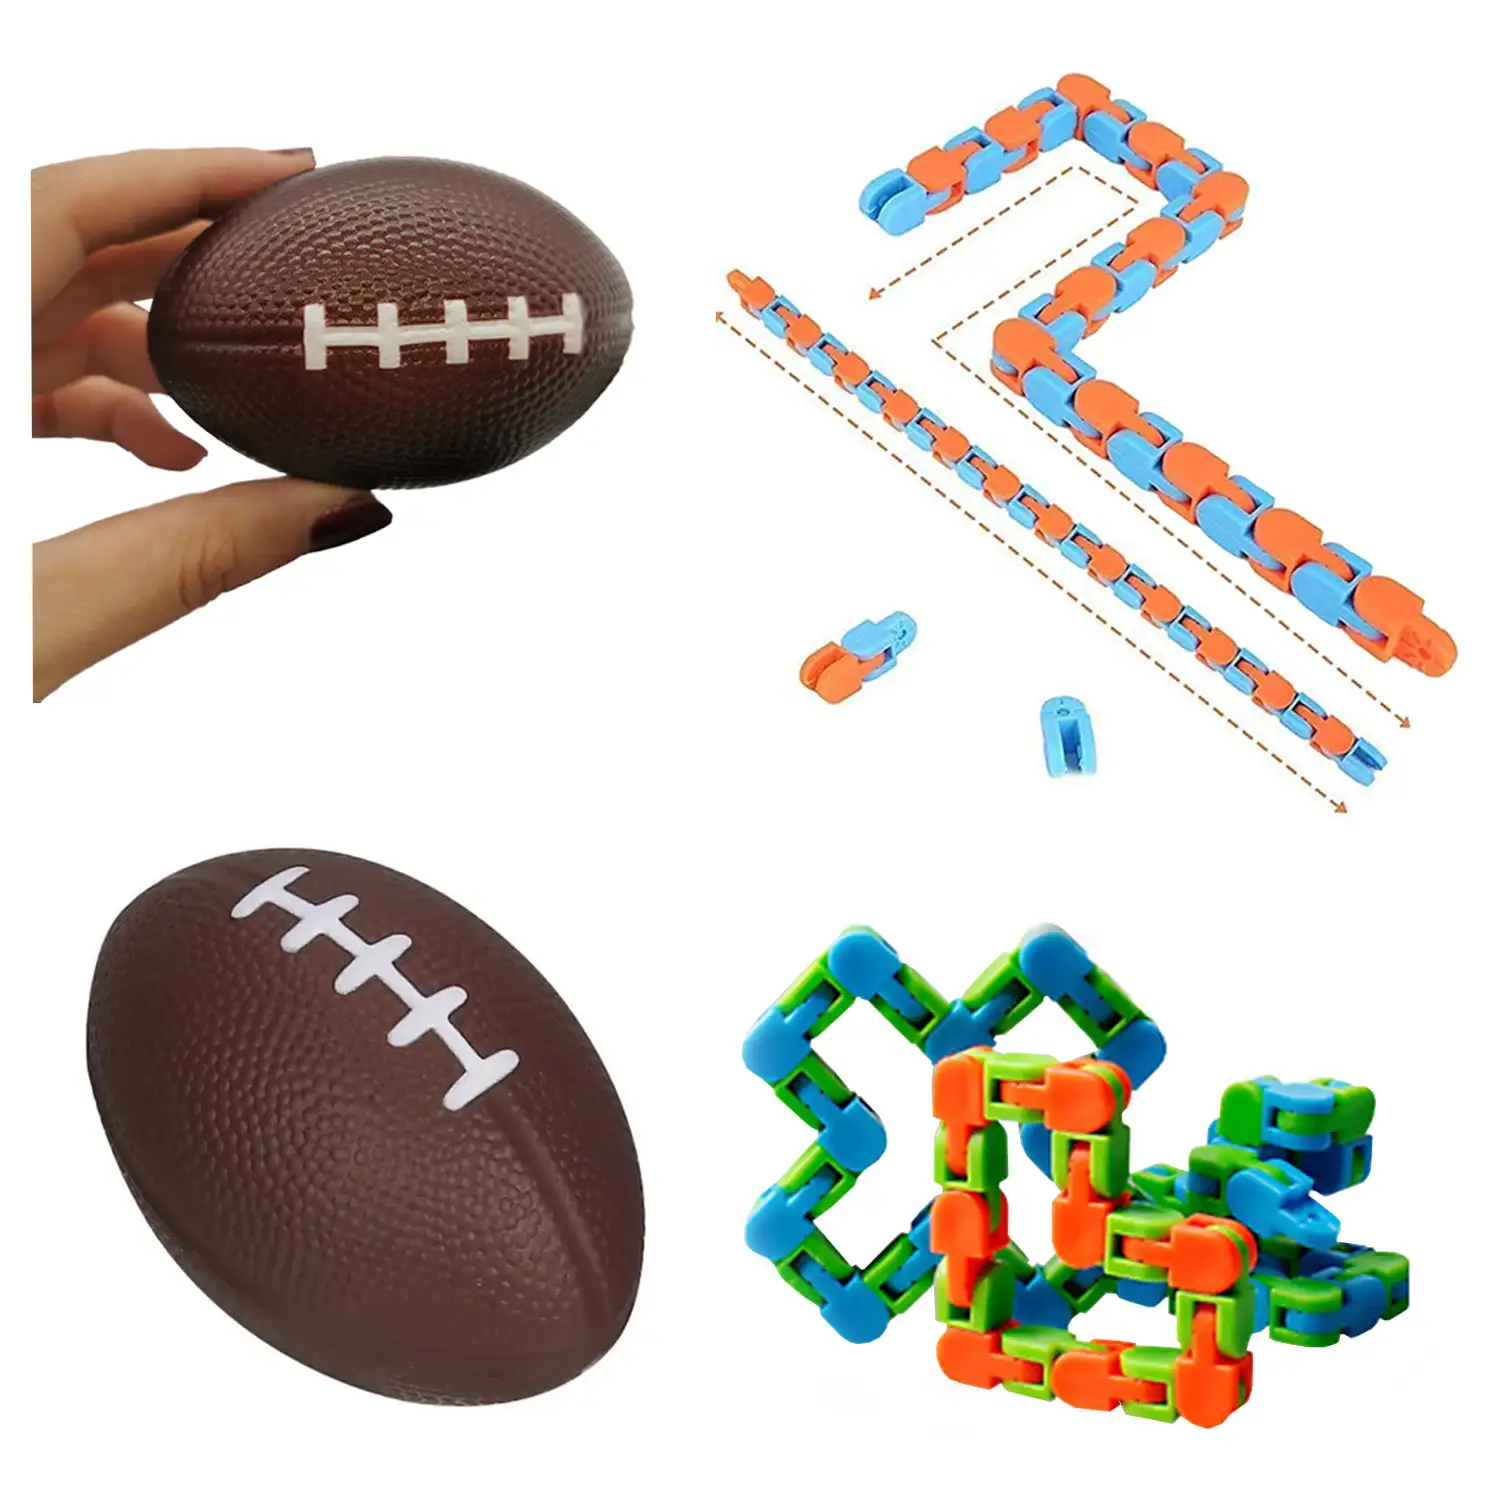 Pack de Fidget Toys anti estrés. Juguetes y accesorios variados.